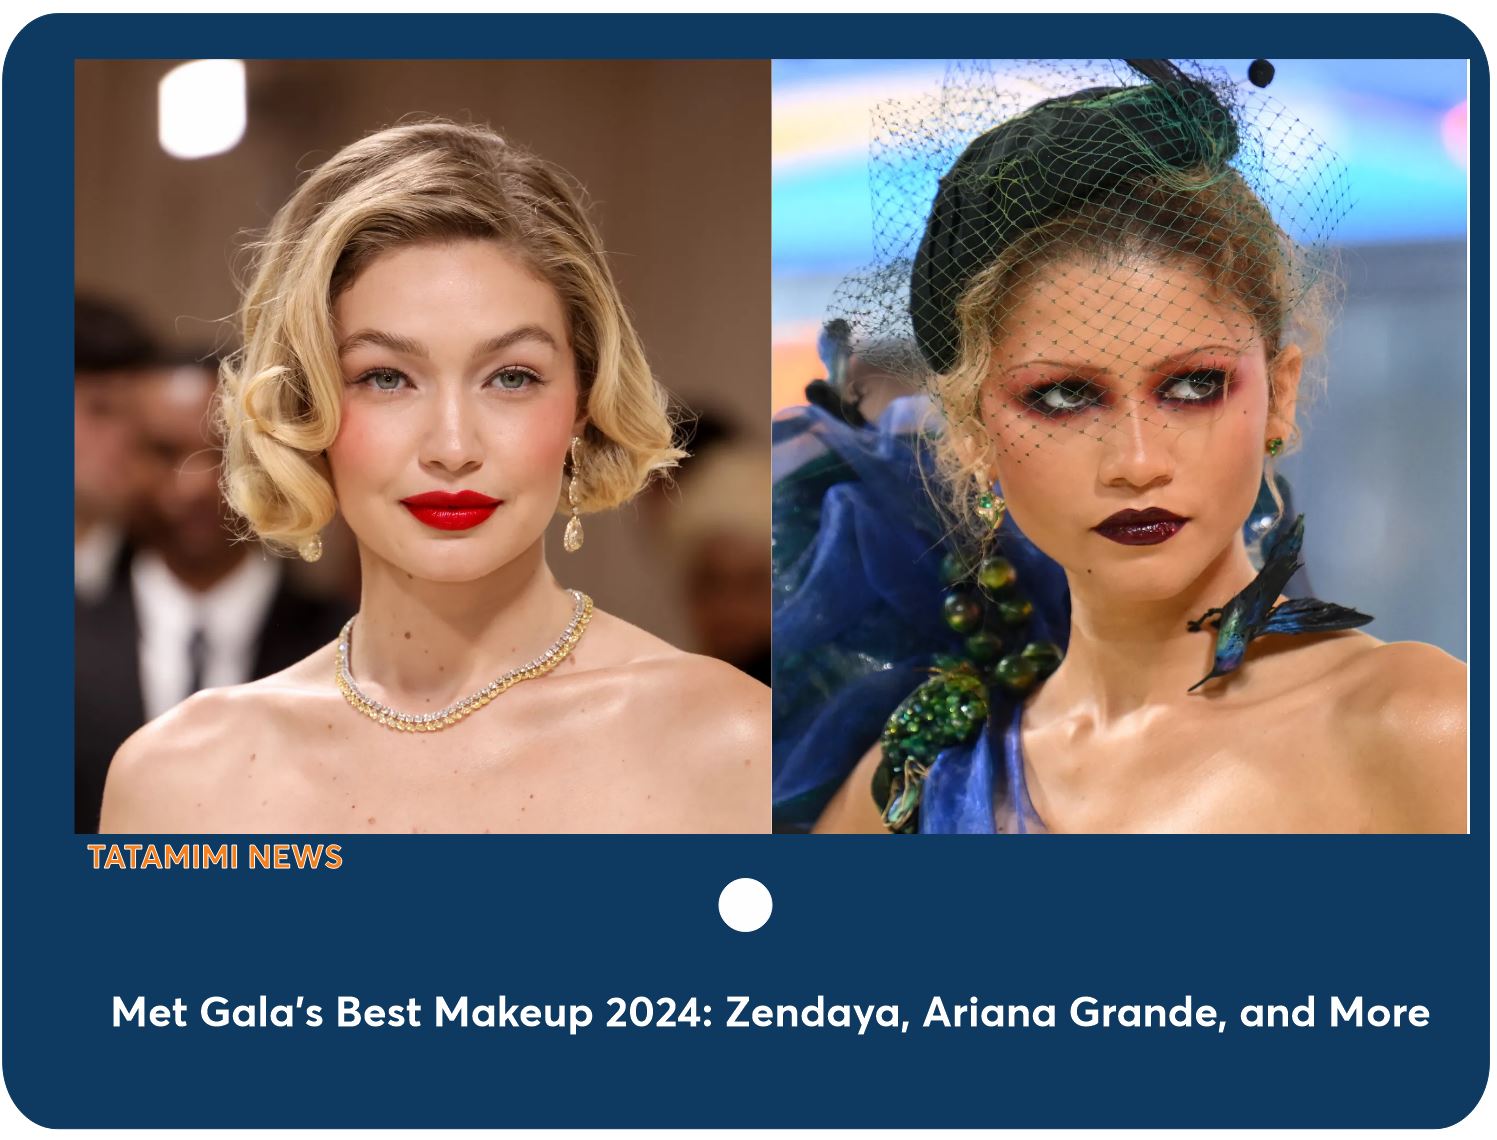 Met Gala's Best Makeup 2024: